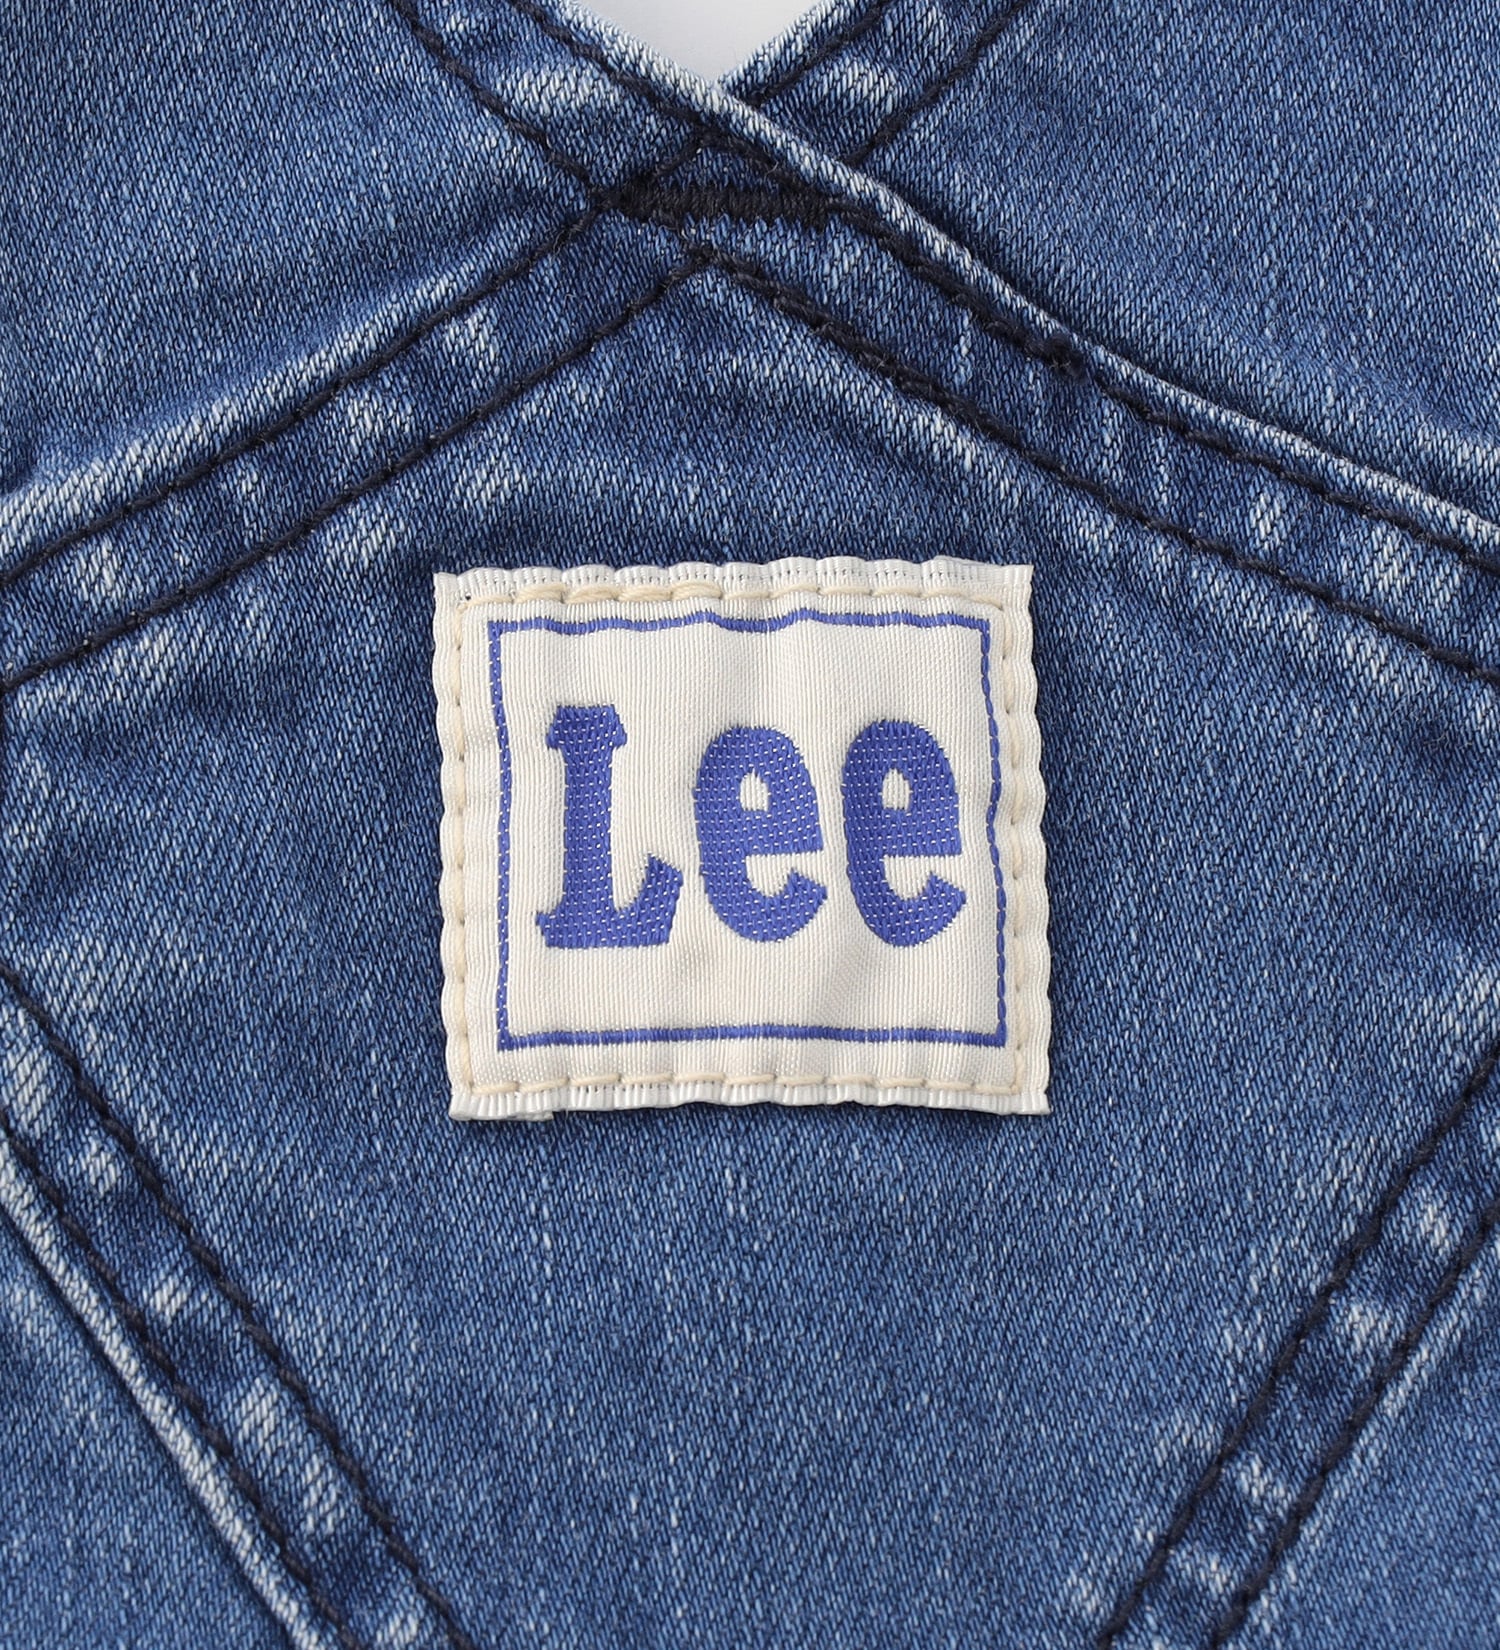 Lee(リー)の【80/90cm】ベビー ストレッチ オーバーオールショーツ|オールインワン/サロペット/オーバーオール/キッズ|中色ブルー